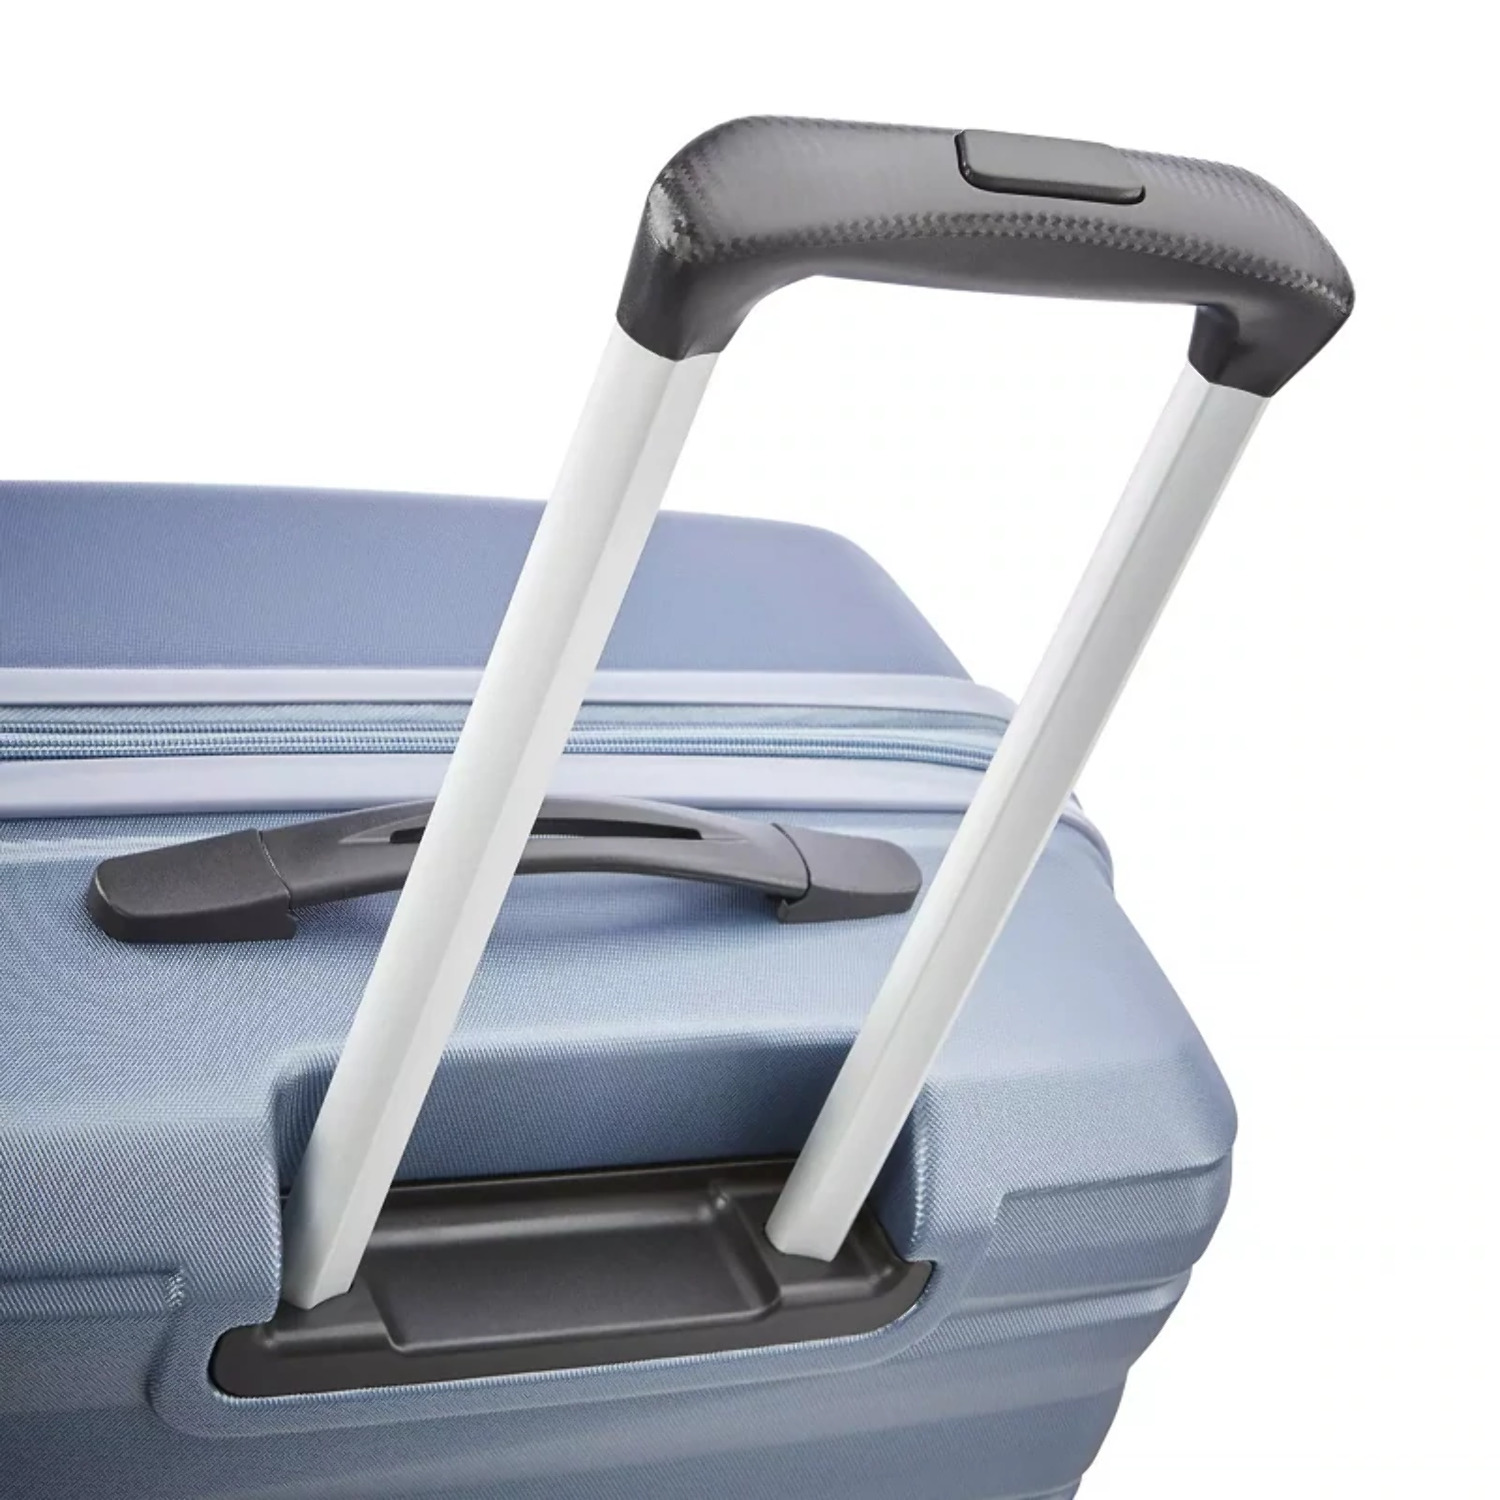 Samsonite Kingsbury Hardside Suitcase 2-Piece Luggage Set - Slate Blue - New - image 10 of 11